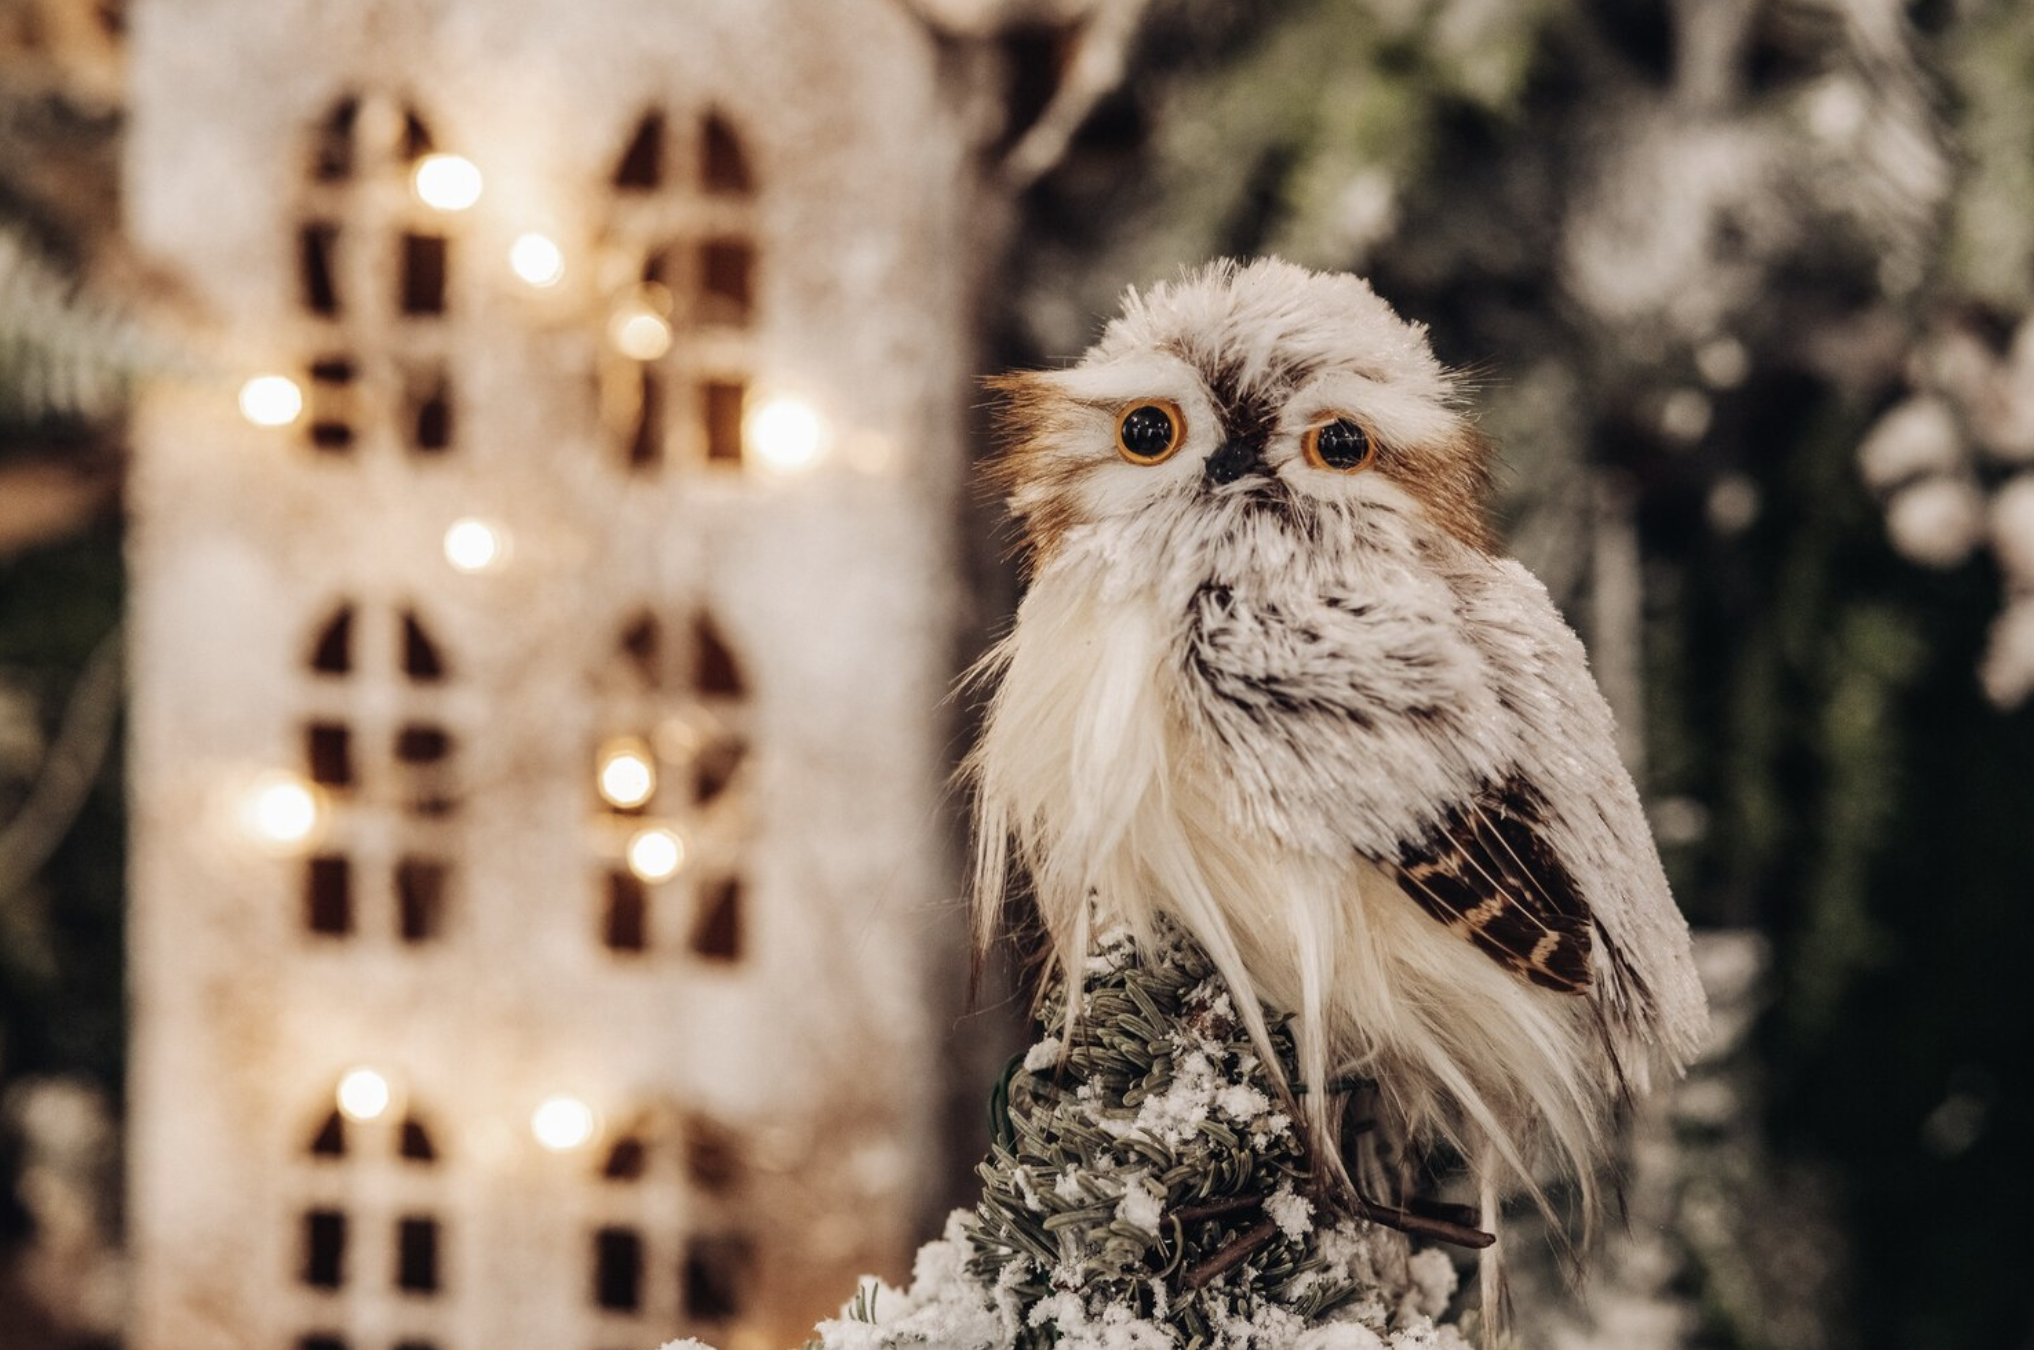 Декор из птиц с яркими перьями оживит ёлку. Фото © Freepik / user15285612